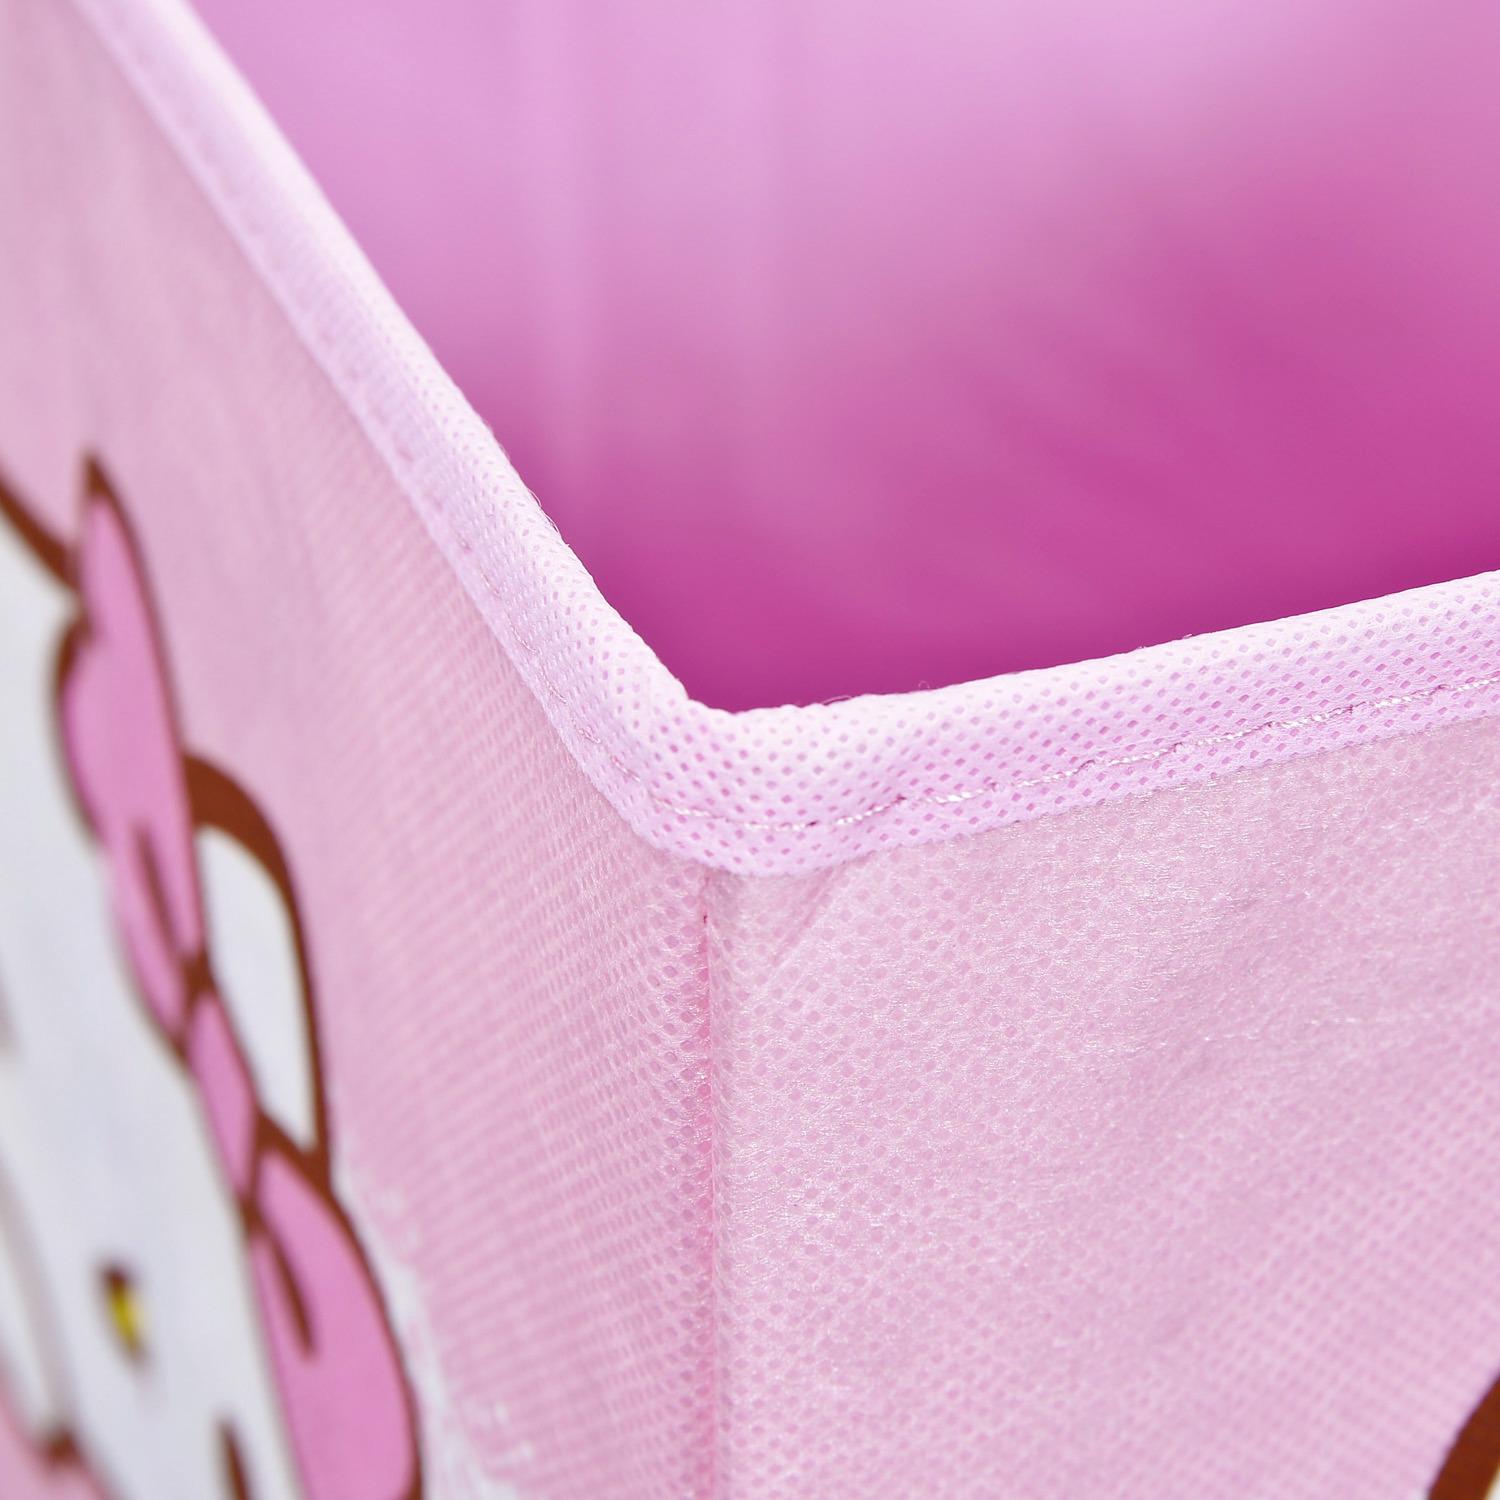 Faltbox "Hello Kitty" , pink - Pink/Hellrosa, Basics, Textil (32/32/32cm) - MID.YOU